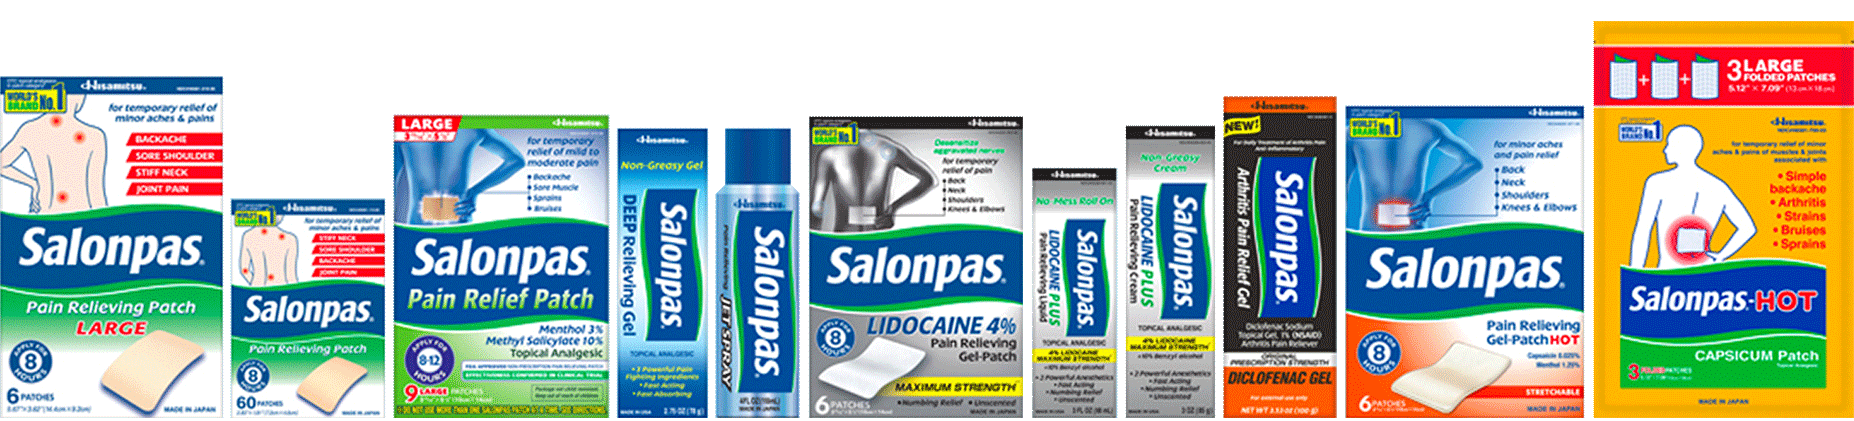 Salonpas Products